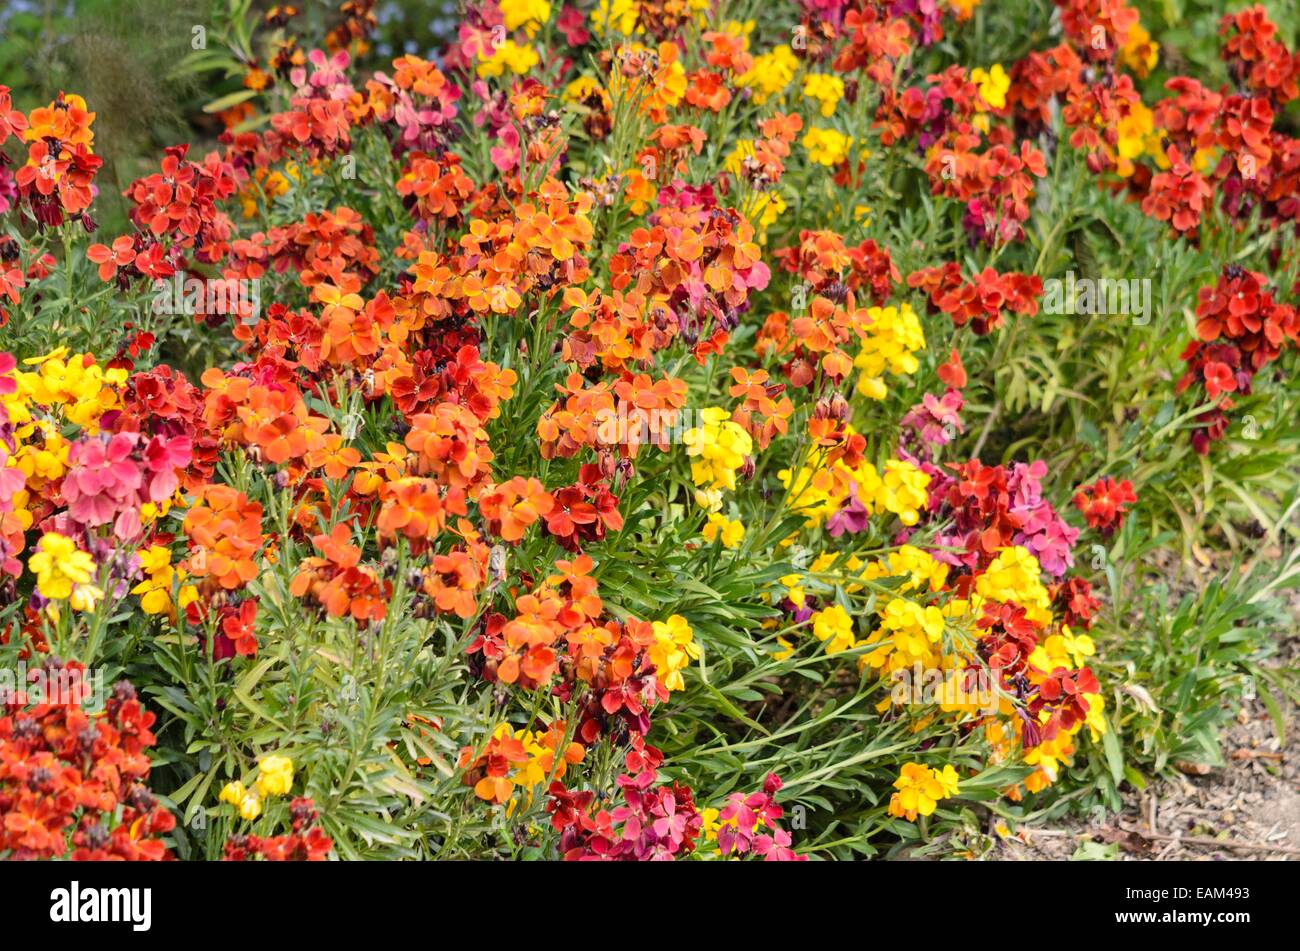 Aegean wallflower (Erysimum cheiri) Stock Photo